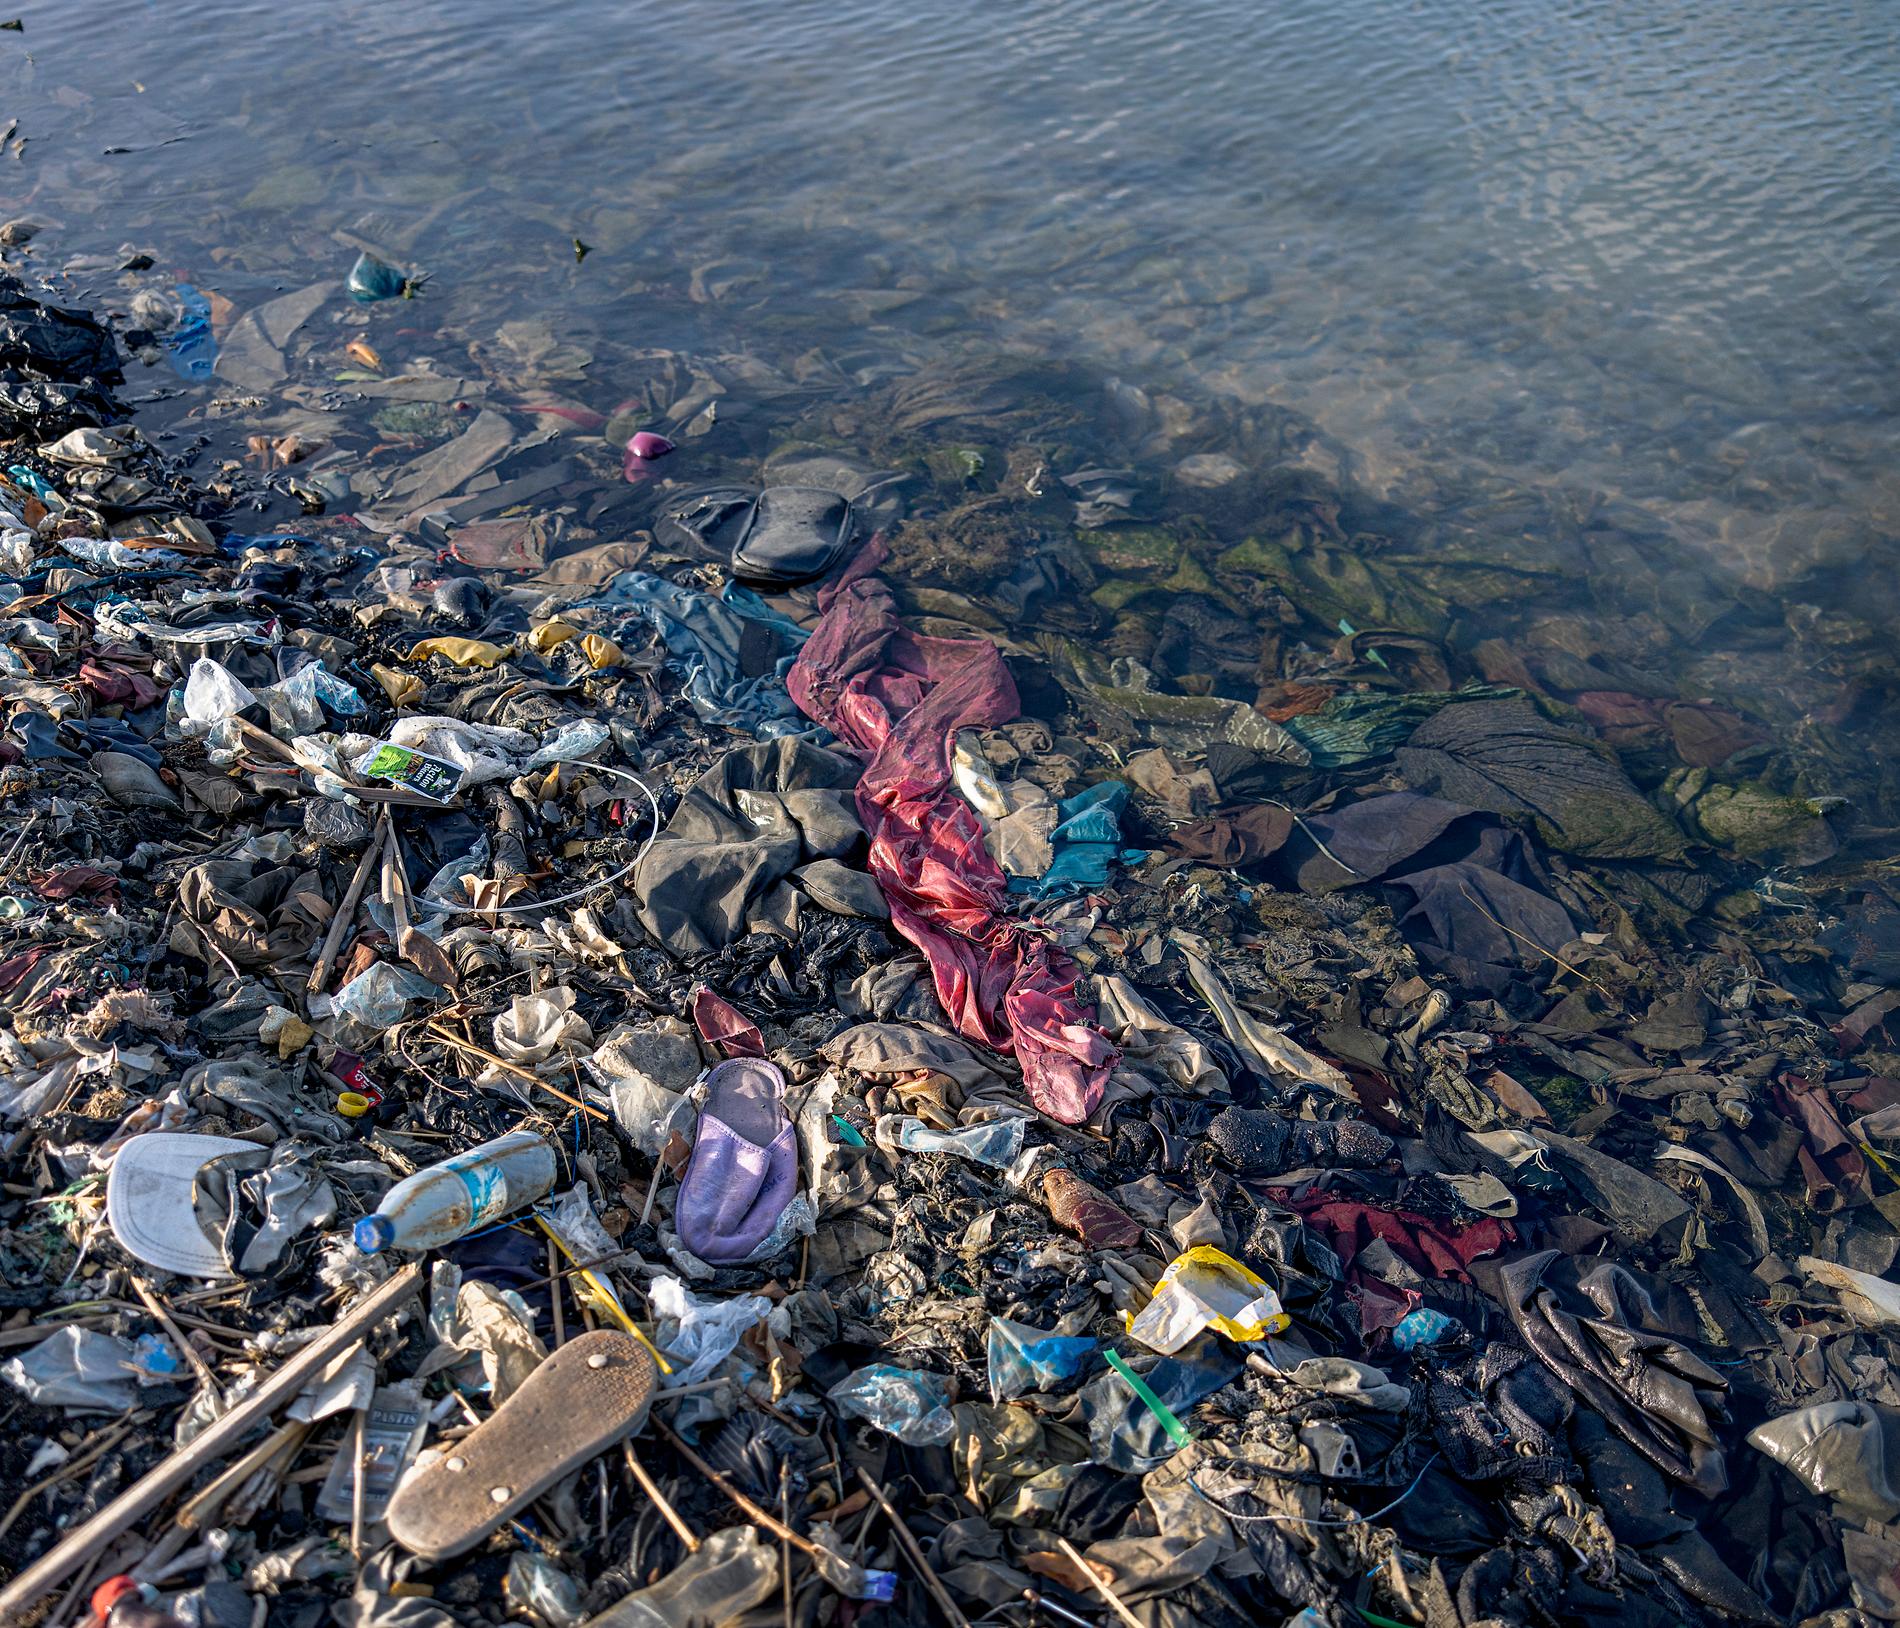 Många av de kläder vi lämnar till återvinning i Sverige hamnar som sopor i fattiga länder och skapar stora miljöproblem.